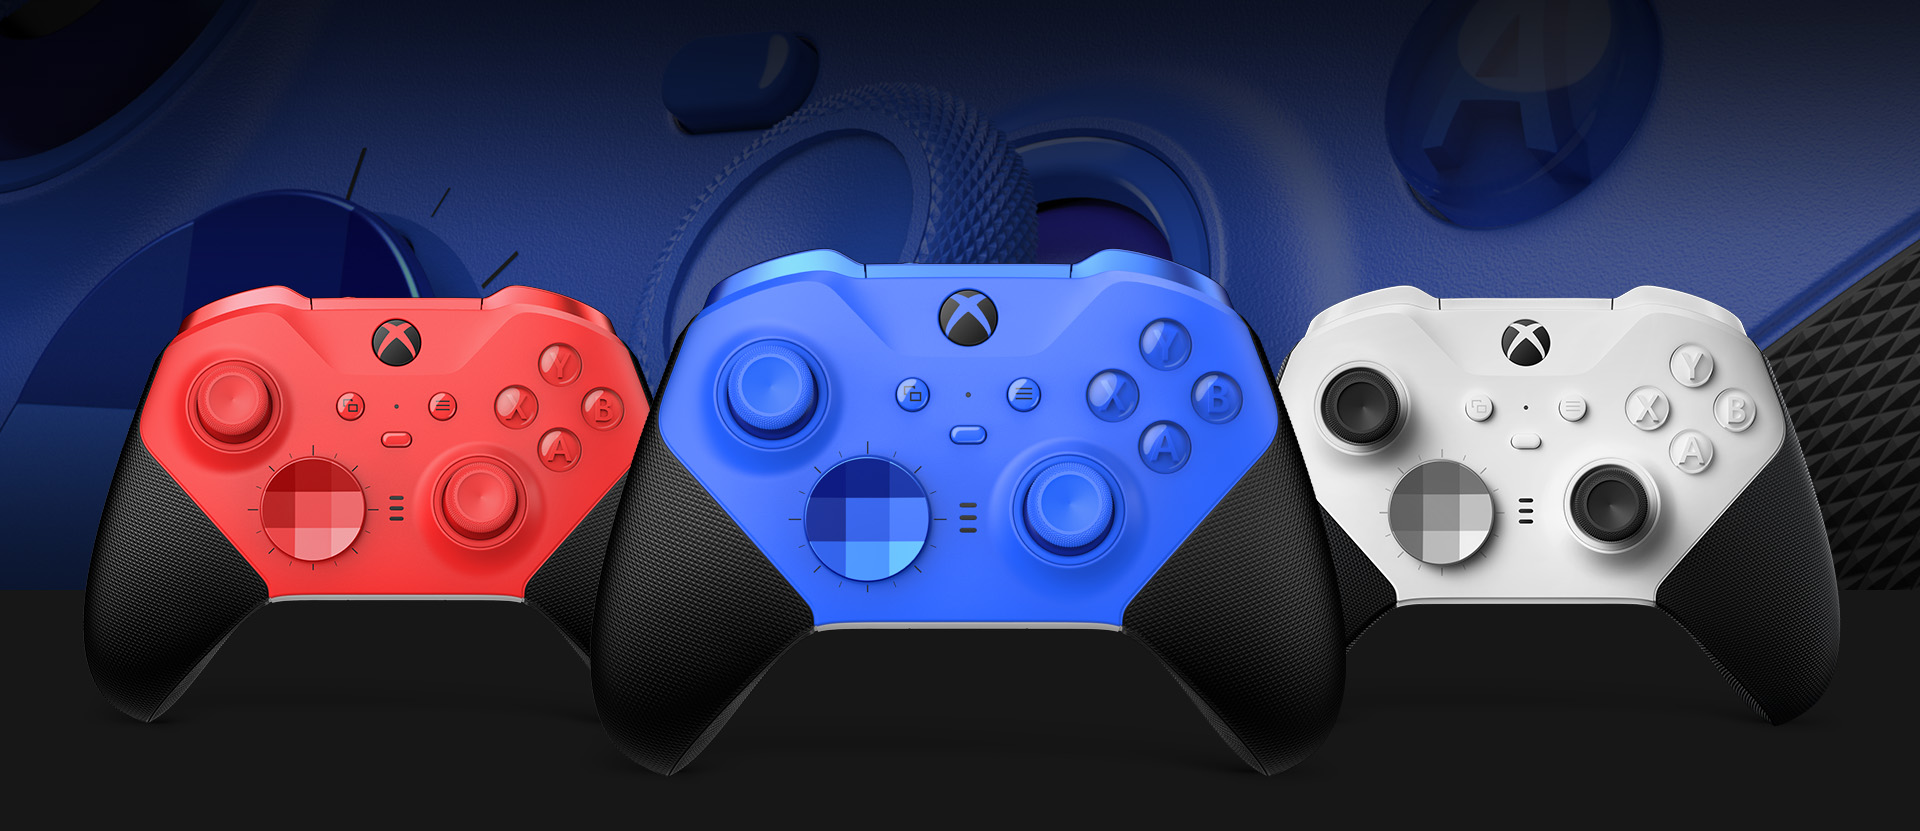 다른 색 옵션이 옆에 표시된 Xbox Elite 무선 컨트롤러 Series 2 - 코어(파랑)를 앞에서 본 모습. 배경에는 클로즈업된 컨트롤러 엄지스틱과 텍스처형 그립이 보입니다.